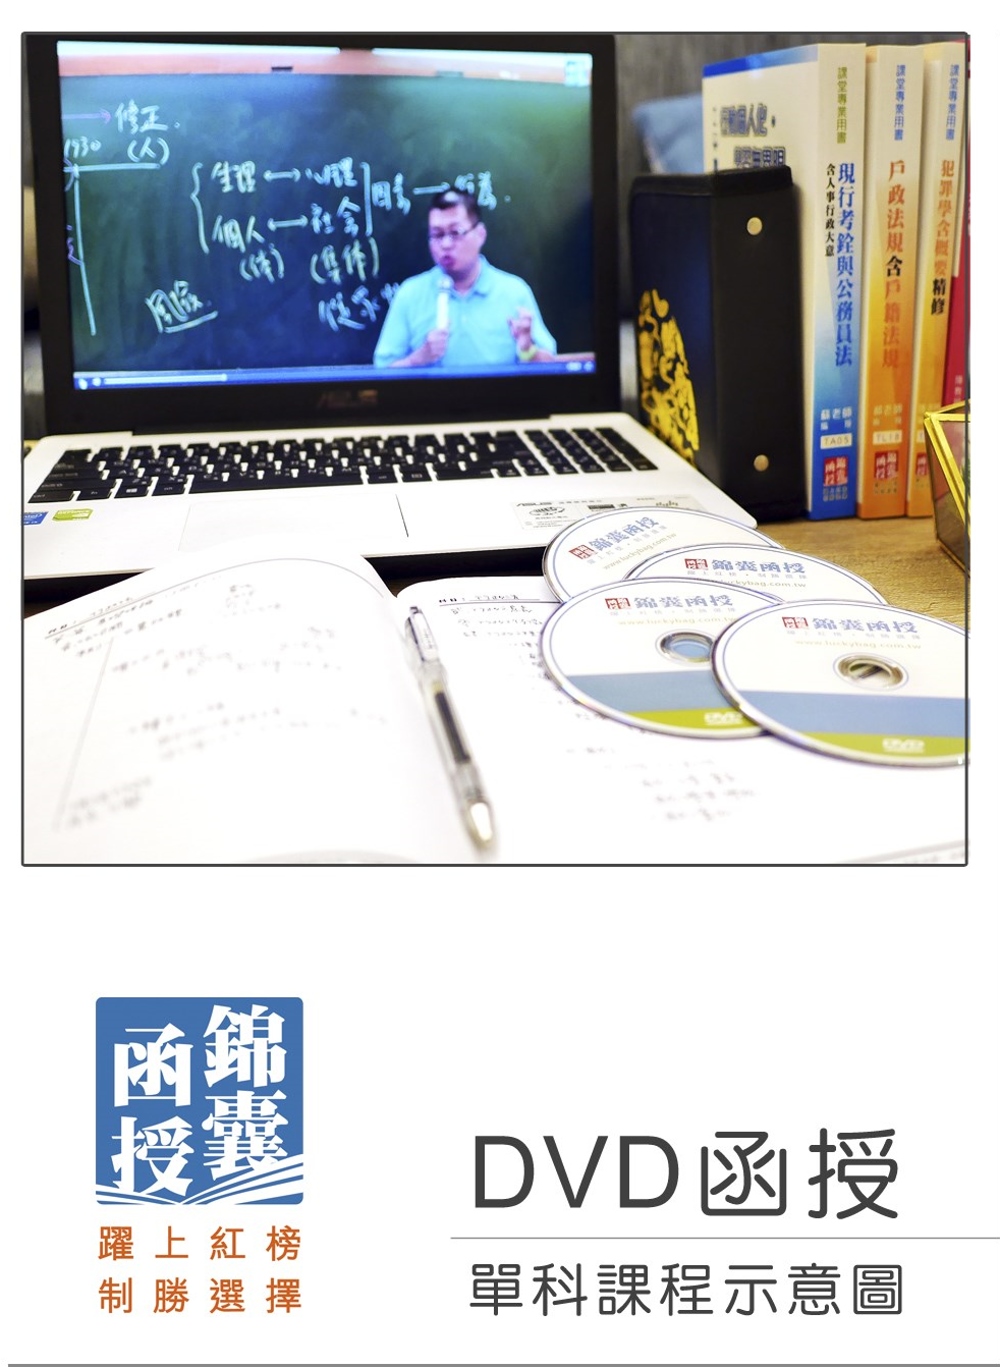 【DVD函授】各國人事制度(正規班&進階班)：單科課程(10...